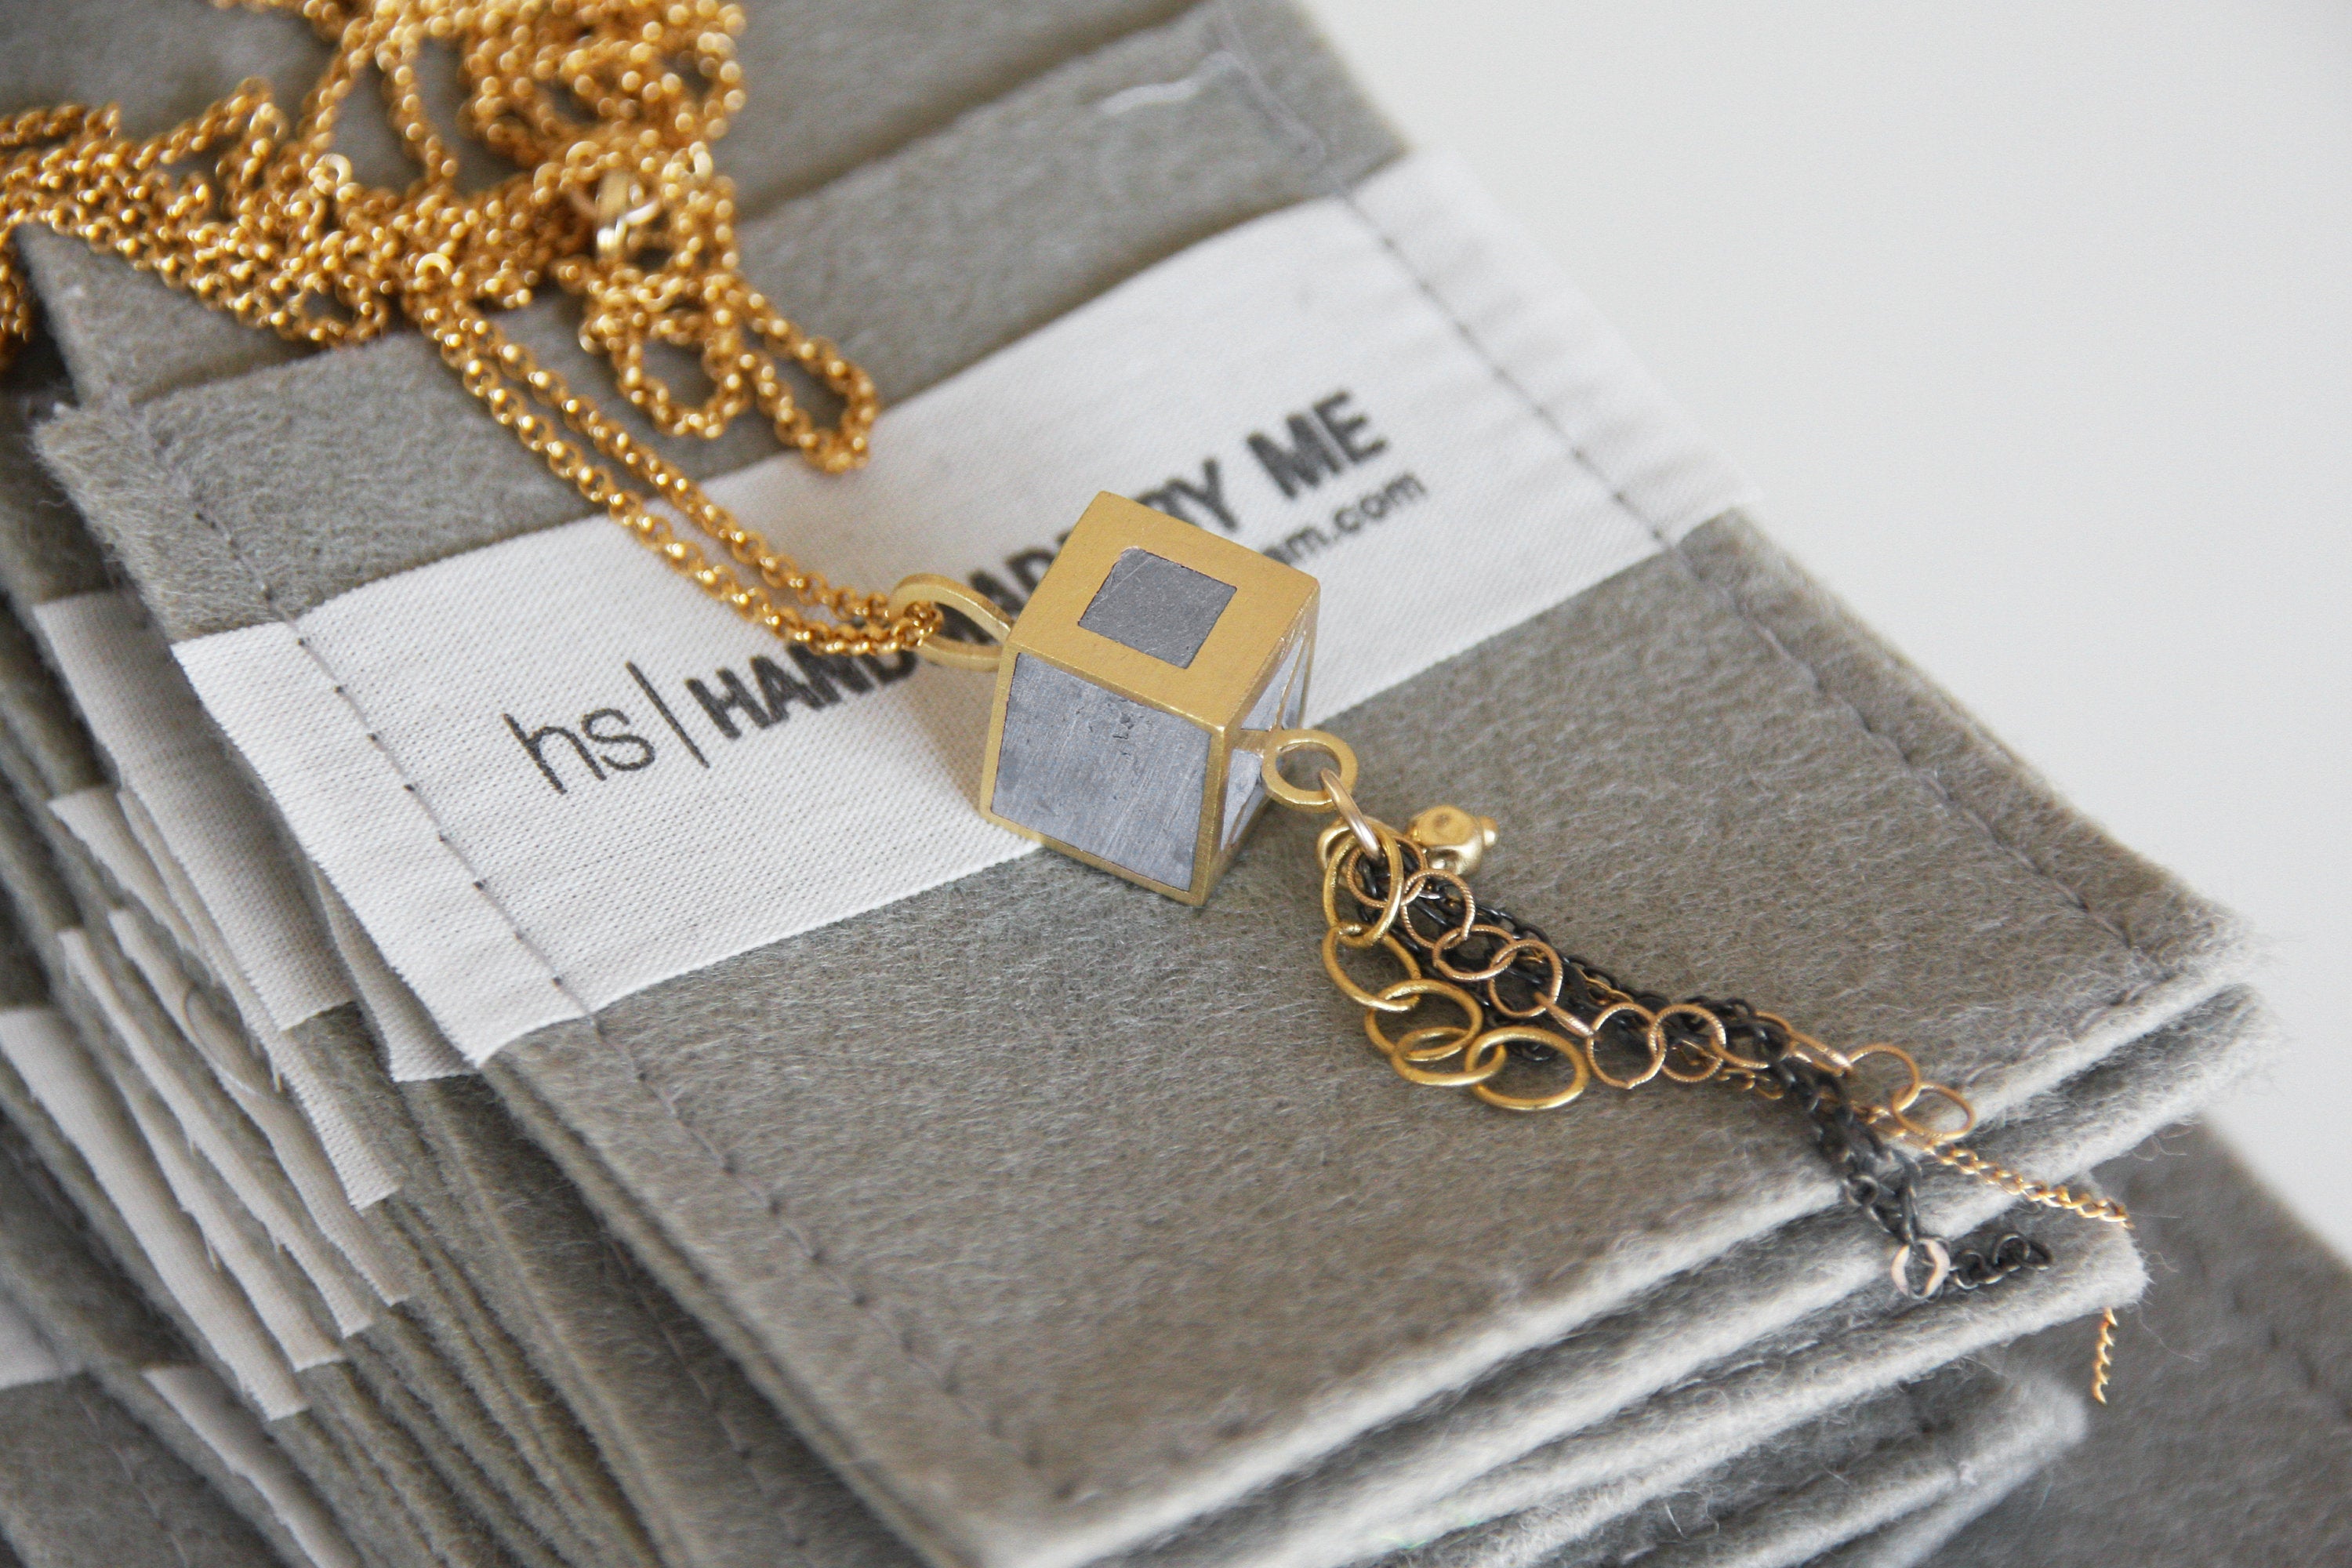 Cube Necklace Pendant With Chain Drop Decor - hs